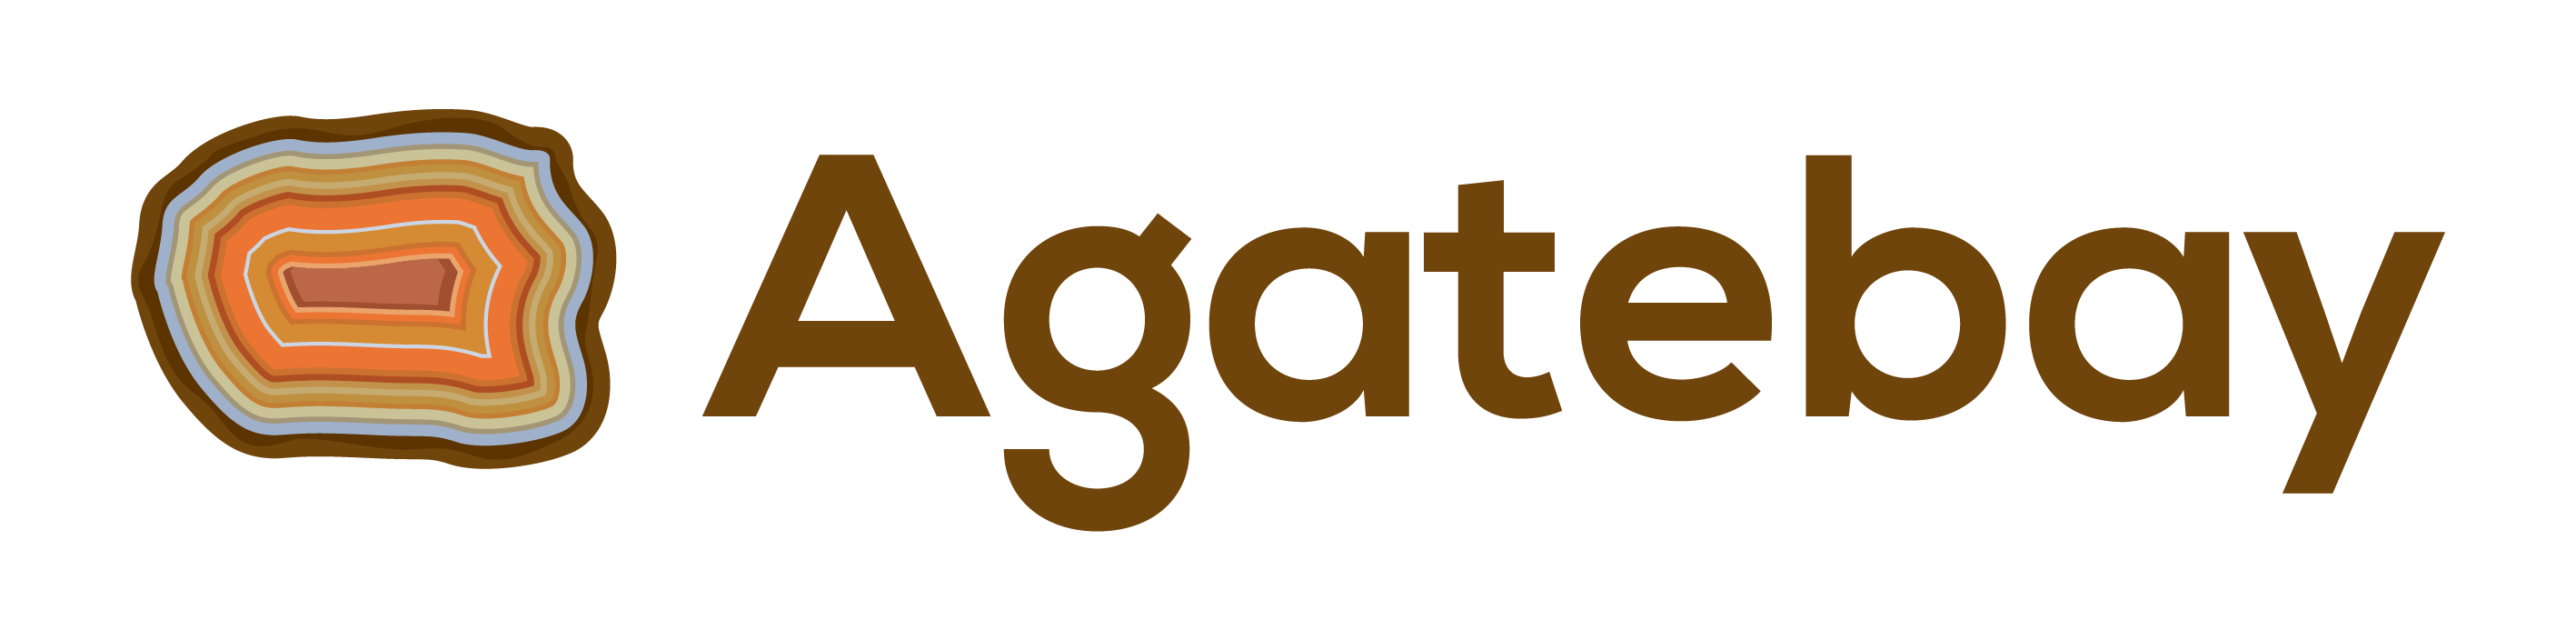 Agatebay